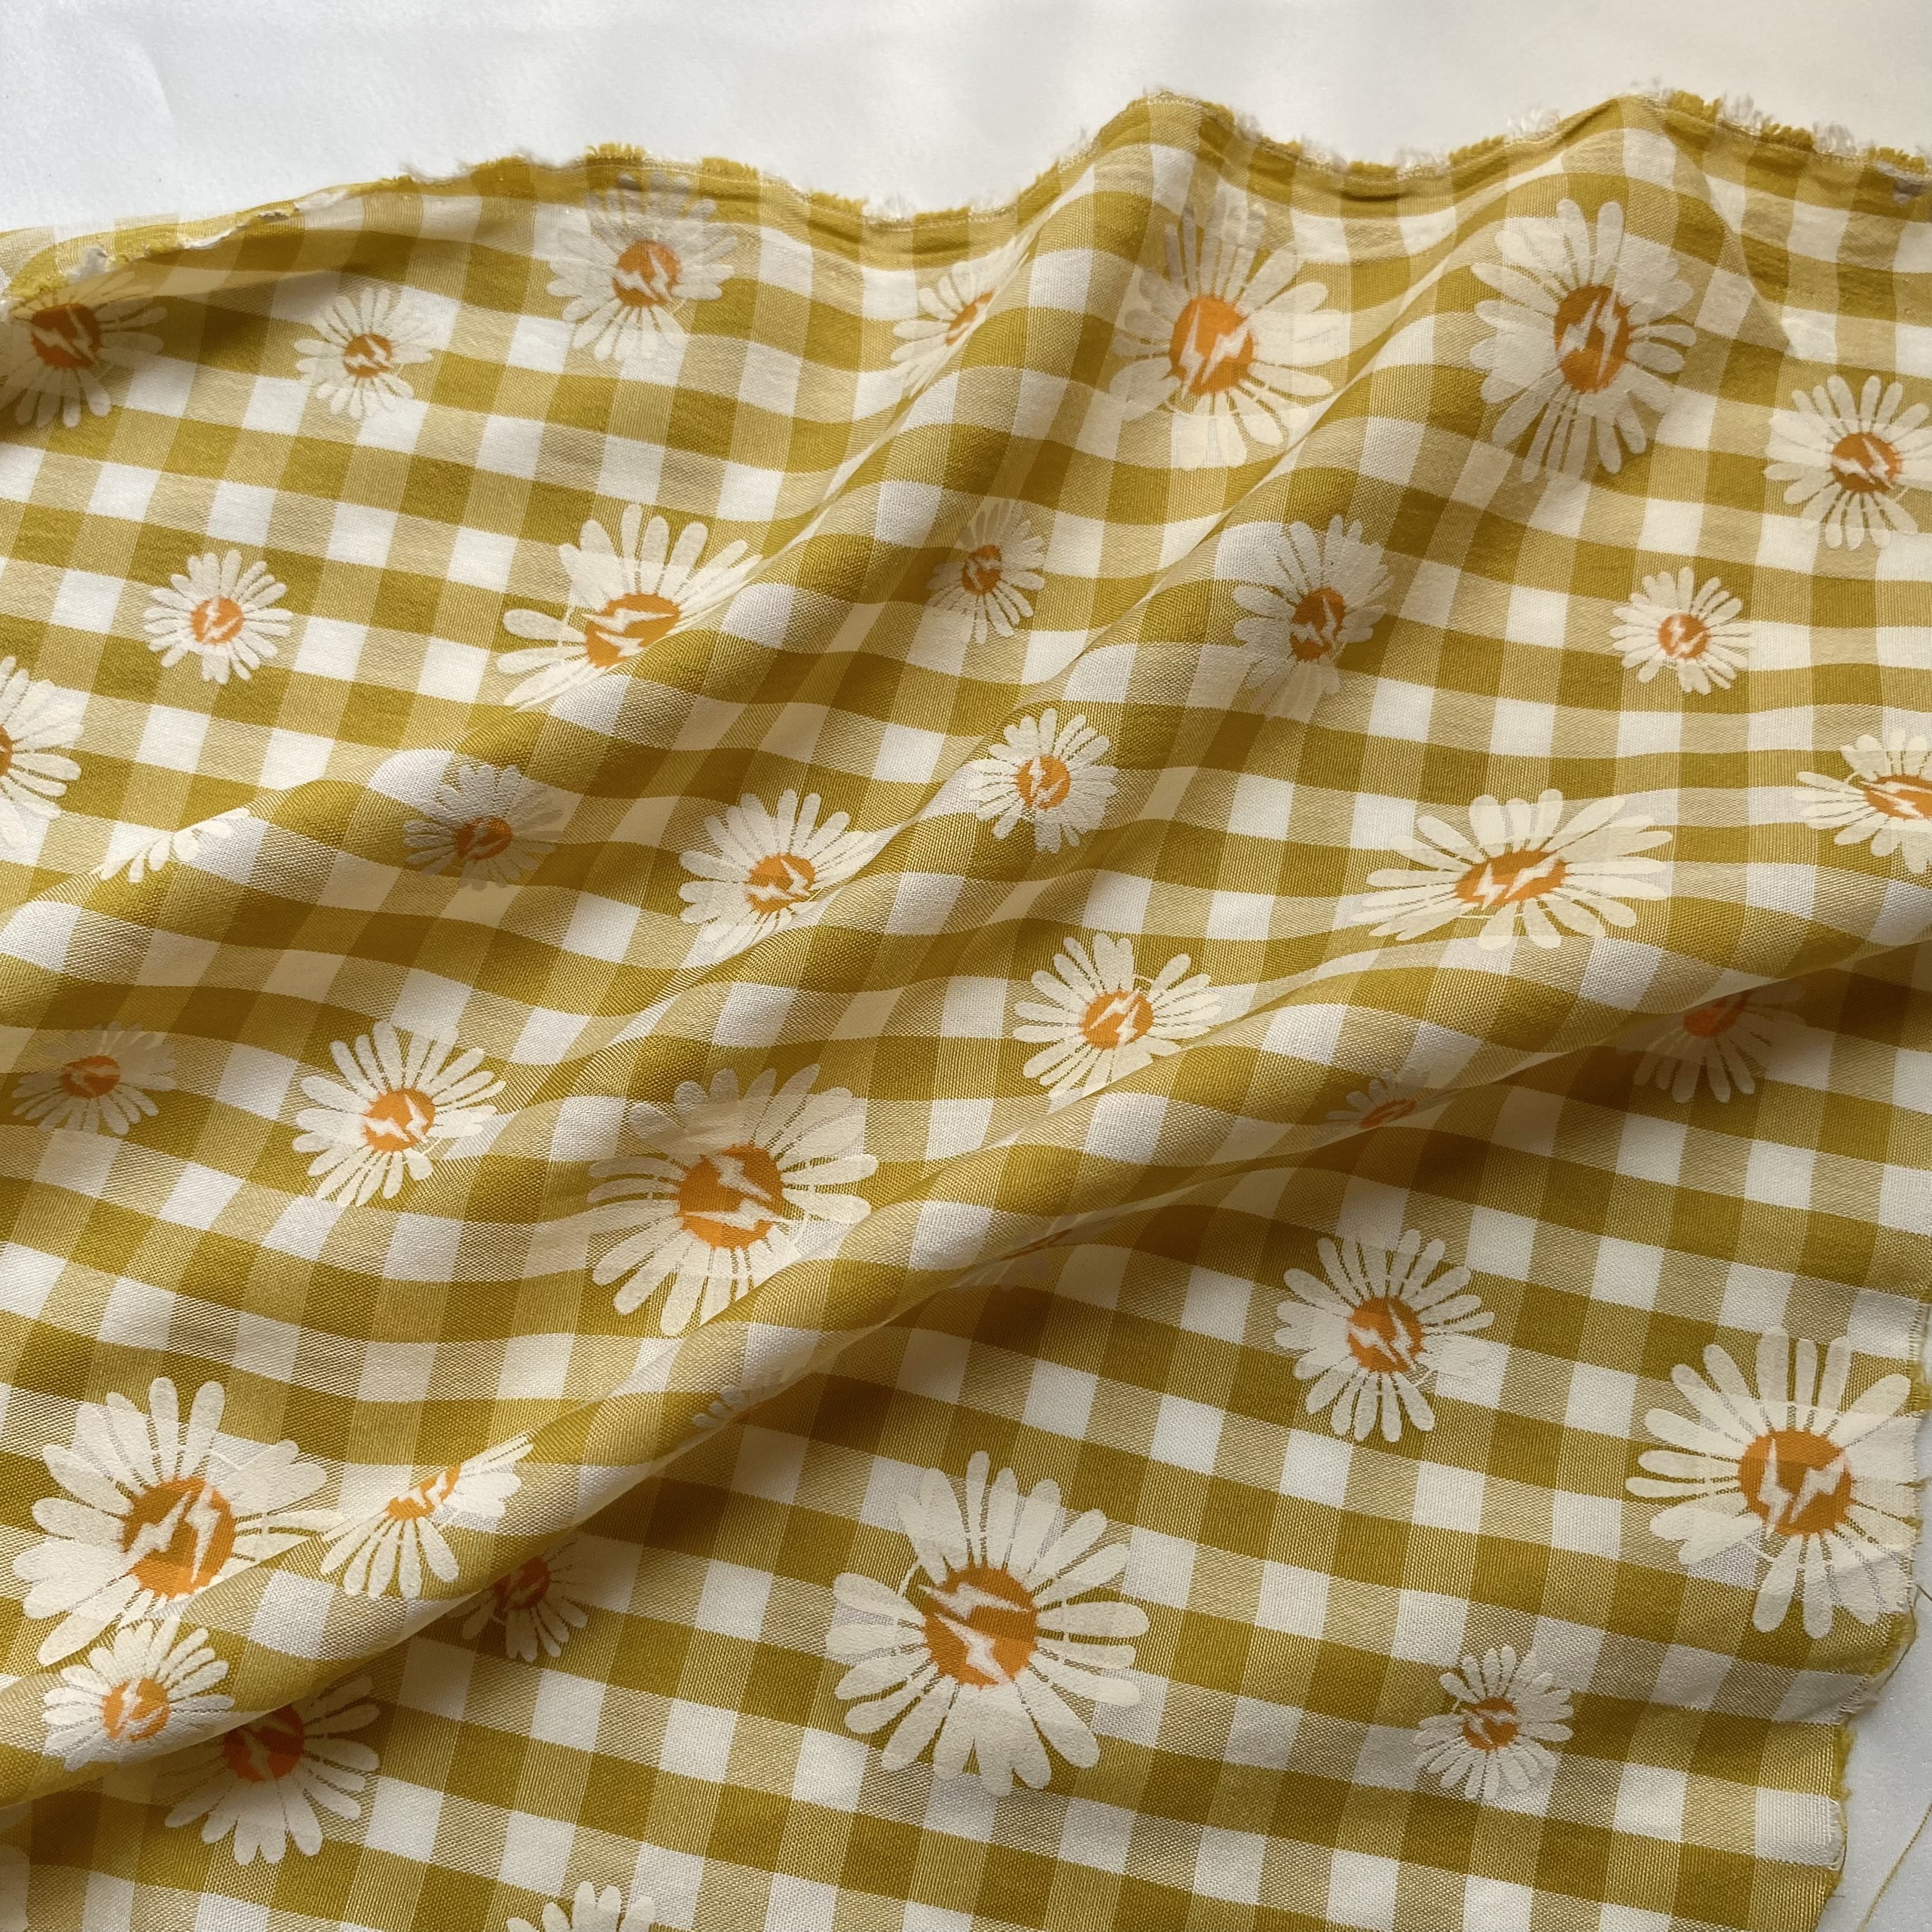 Vải Thô Cotton Pha Vàng Hoa Cúc Sơn Khổ 1m46 - Không Co Giãn - May Đầm, Áo Kiểu, Đồ Bộ, Đồ Trẻ Em